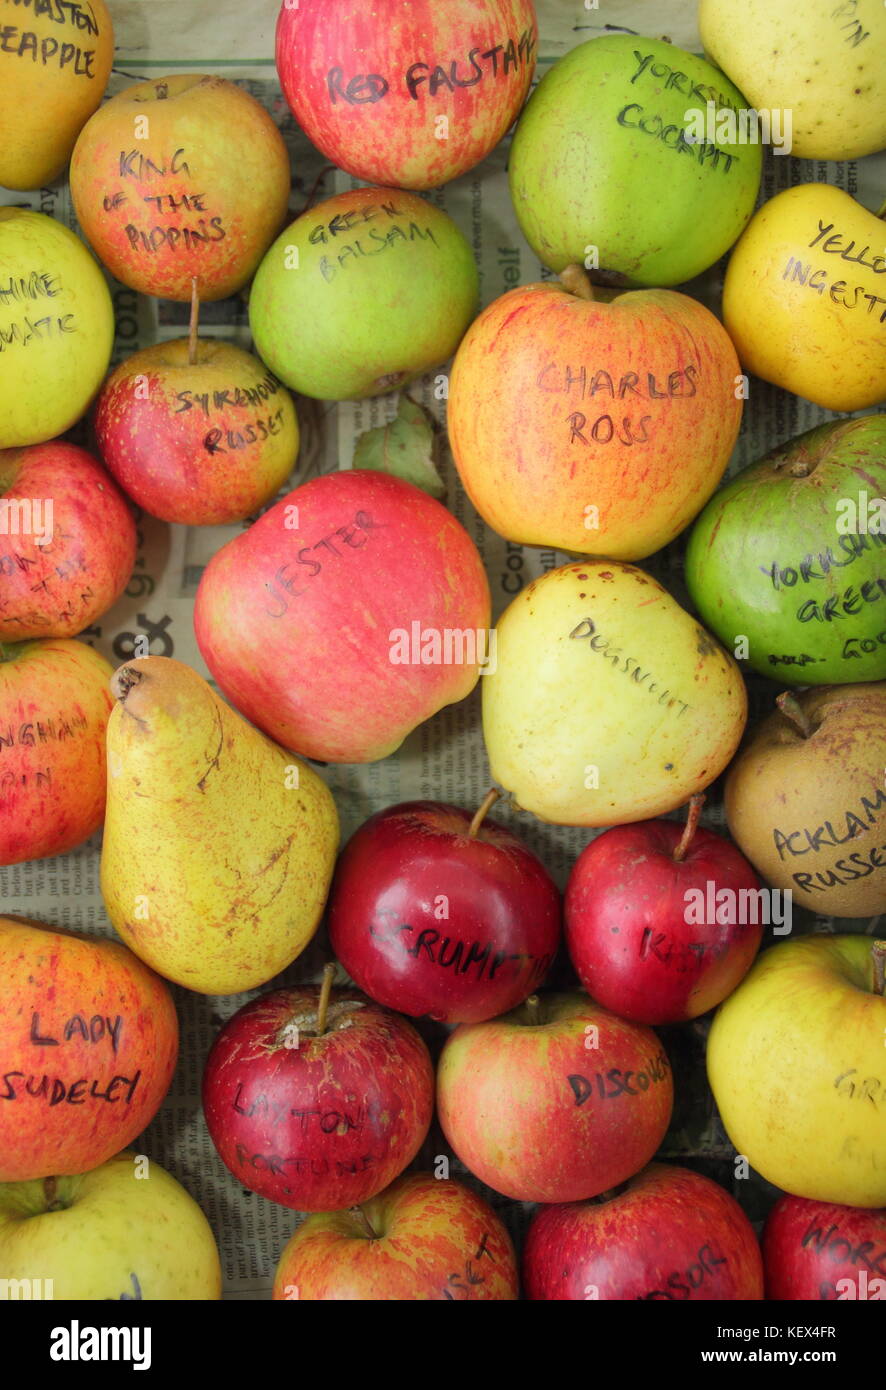 Englisch Obstsorten einschließlich kochen Apfel (Malus) Annie Elizabeth und Pyrus Communis Konferenz Birne, angezeigt an einem Apple Tag Ernte bei DE Stockfoto